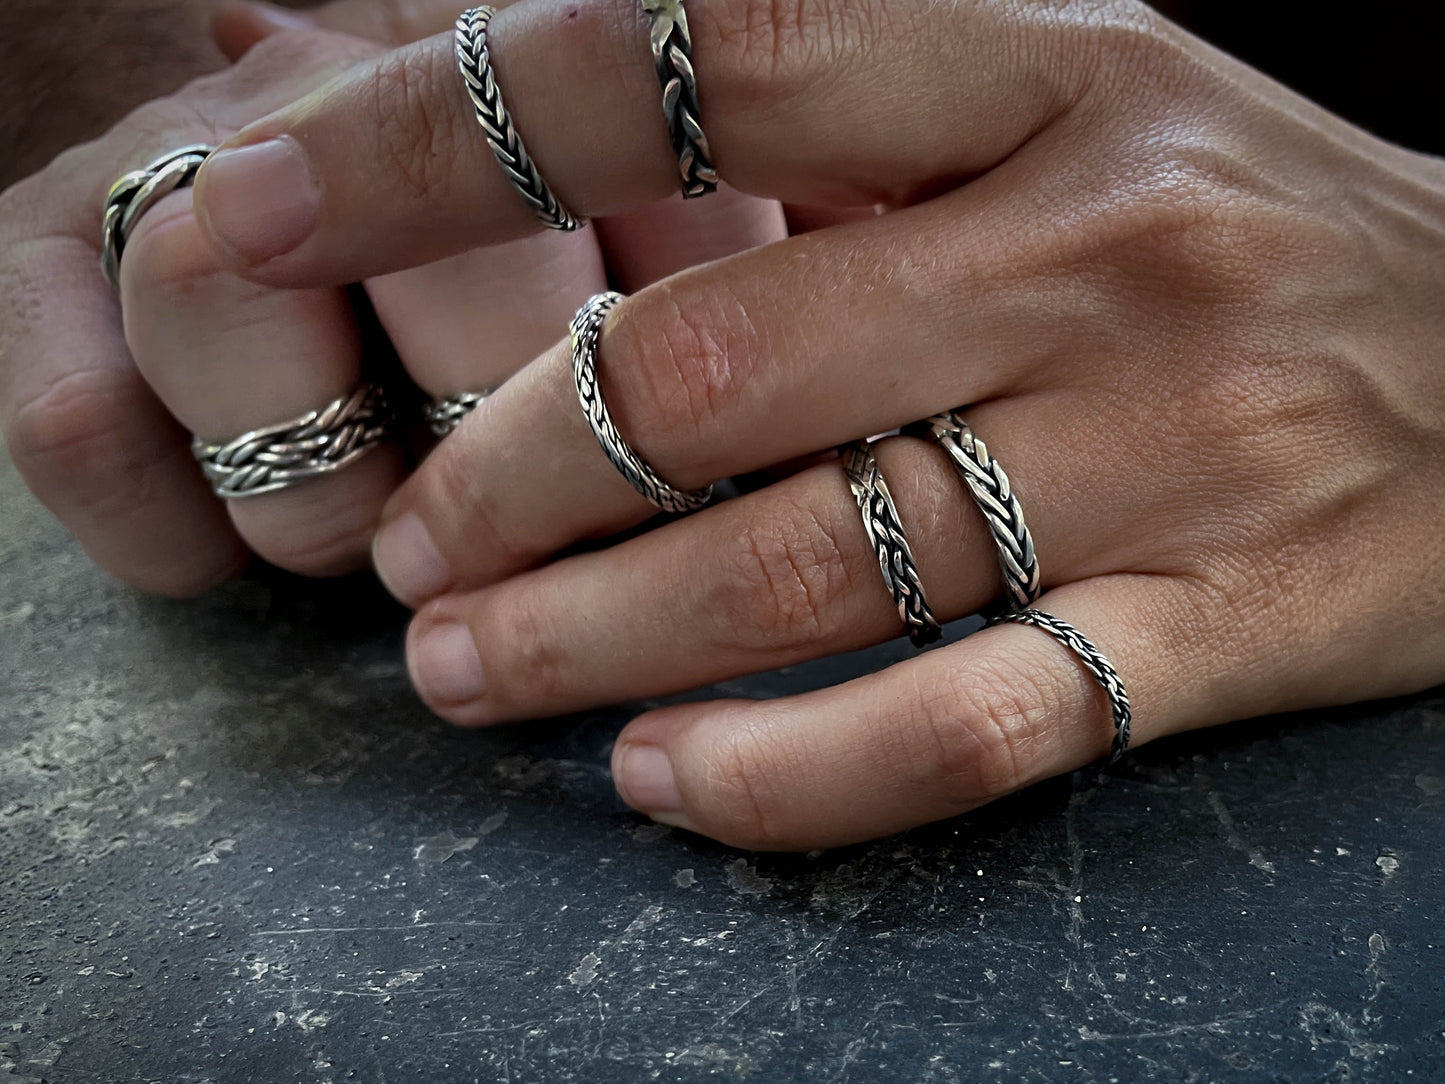 Thin Viking Silver Ring